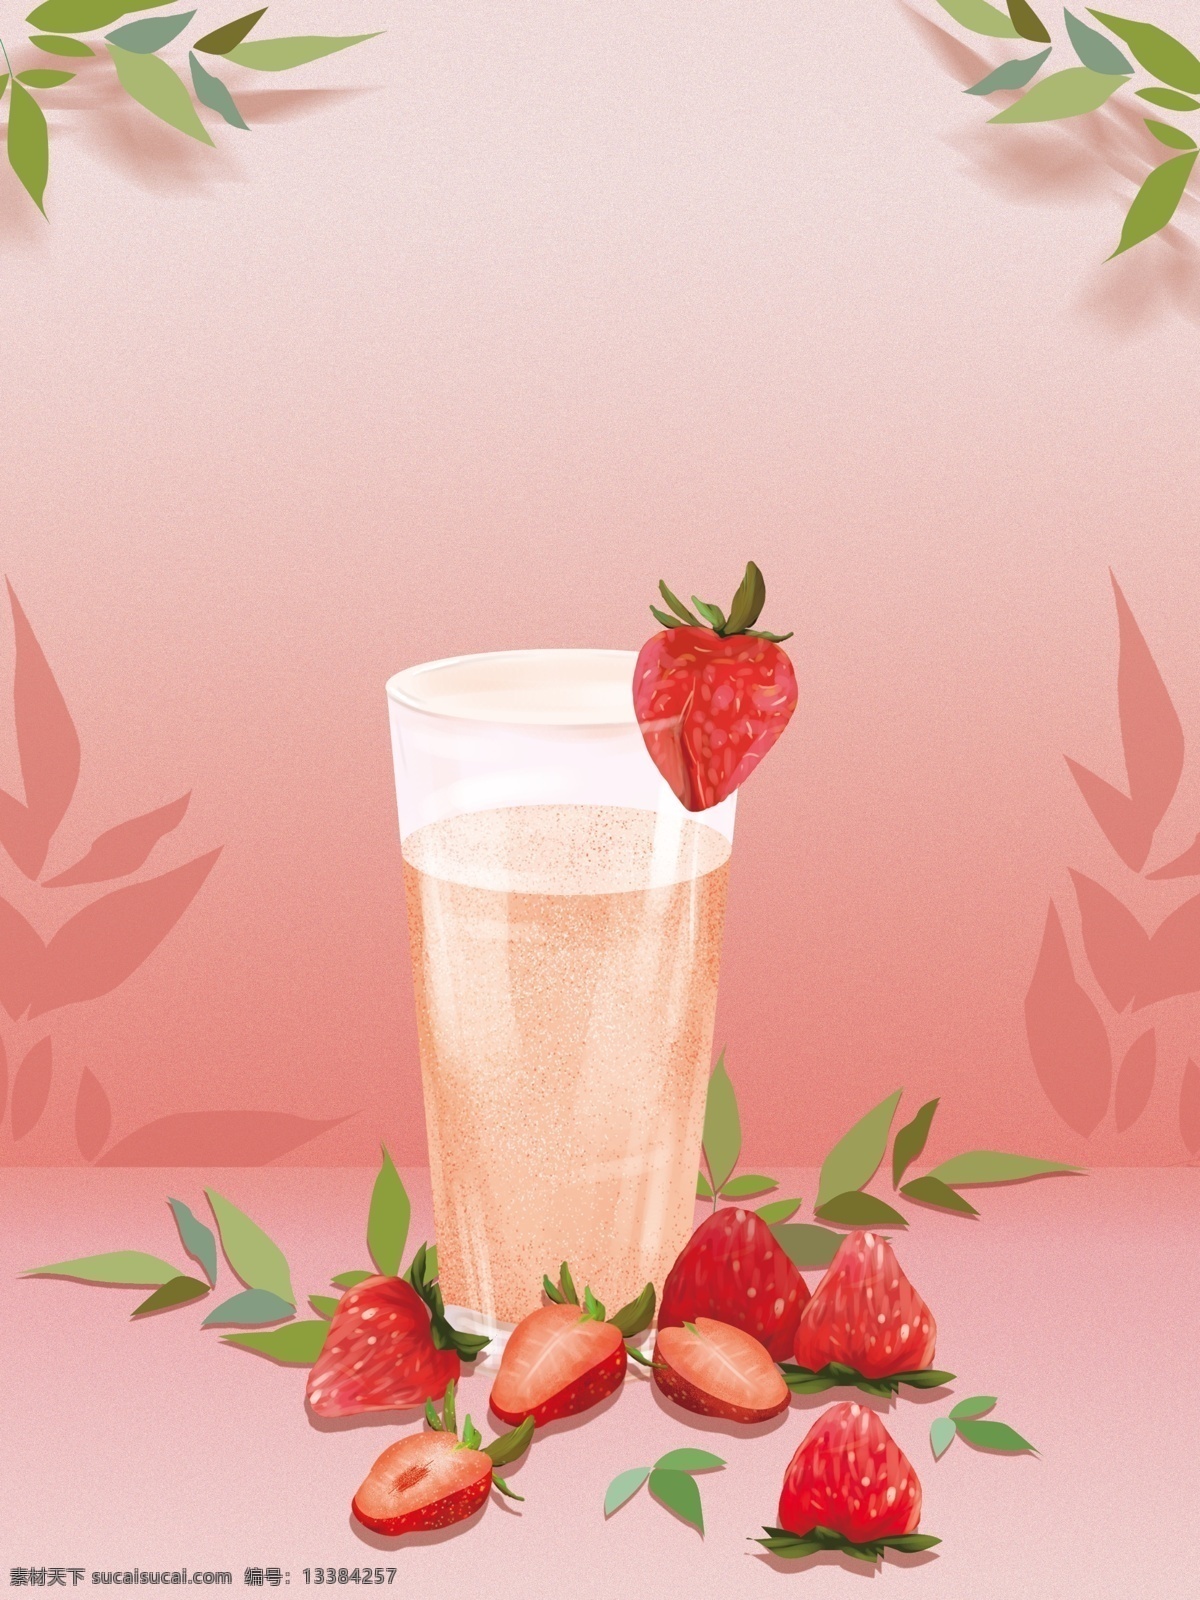 彩绘 草莓 饮料 背景 绿叶 树叶 饮料背景 水果 草莓饮料 水果饮料